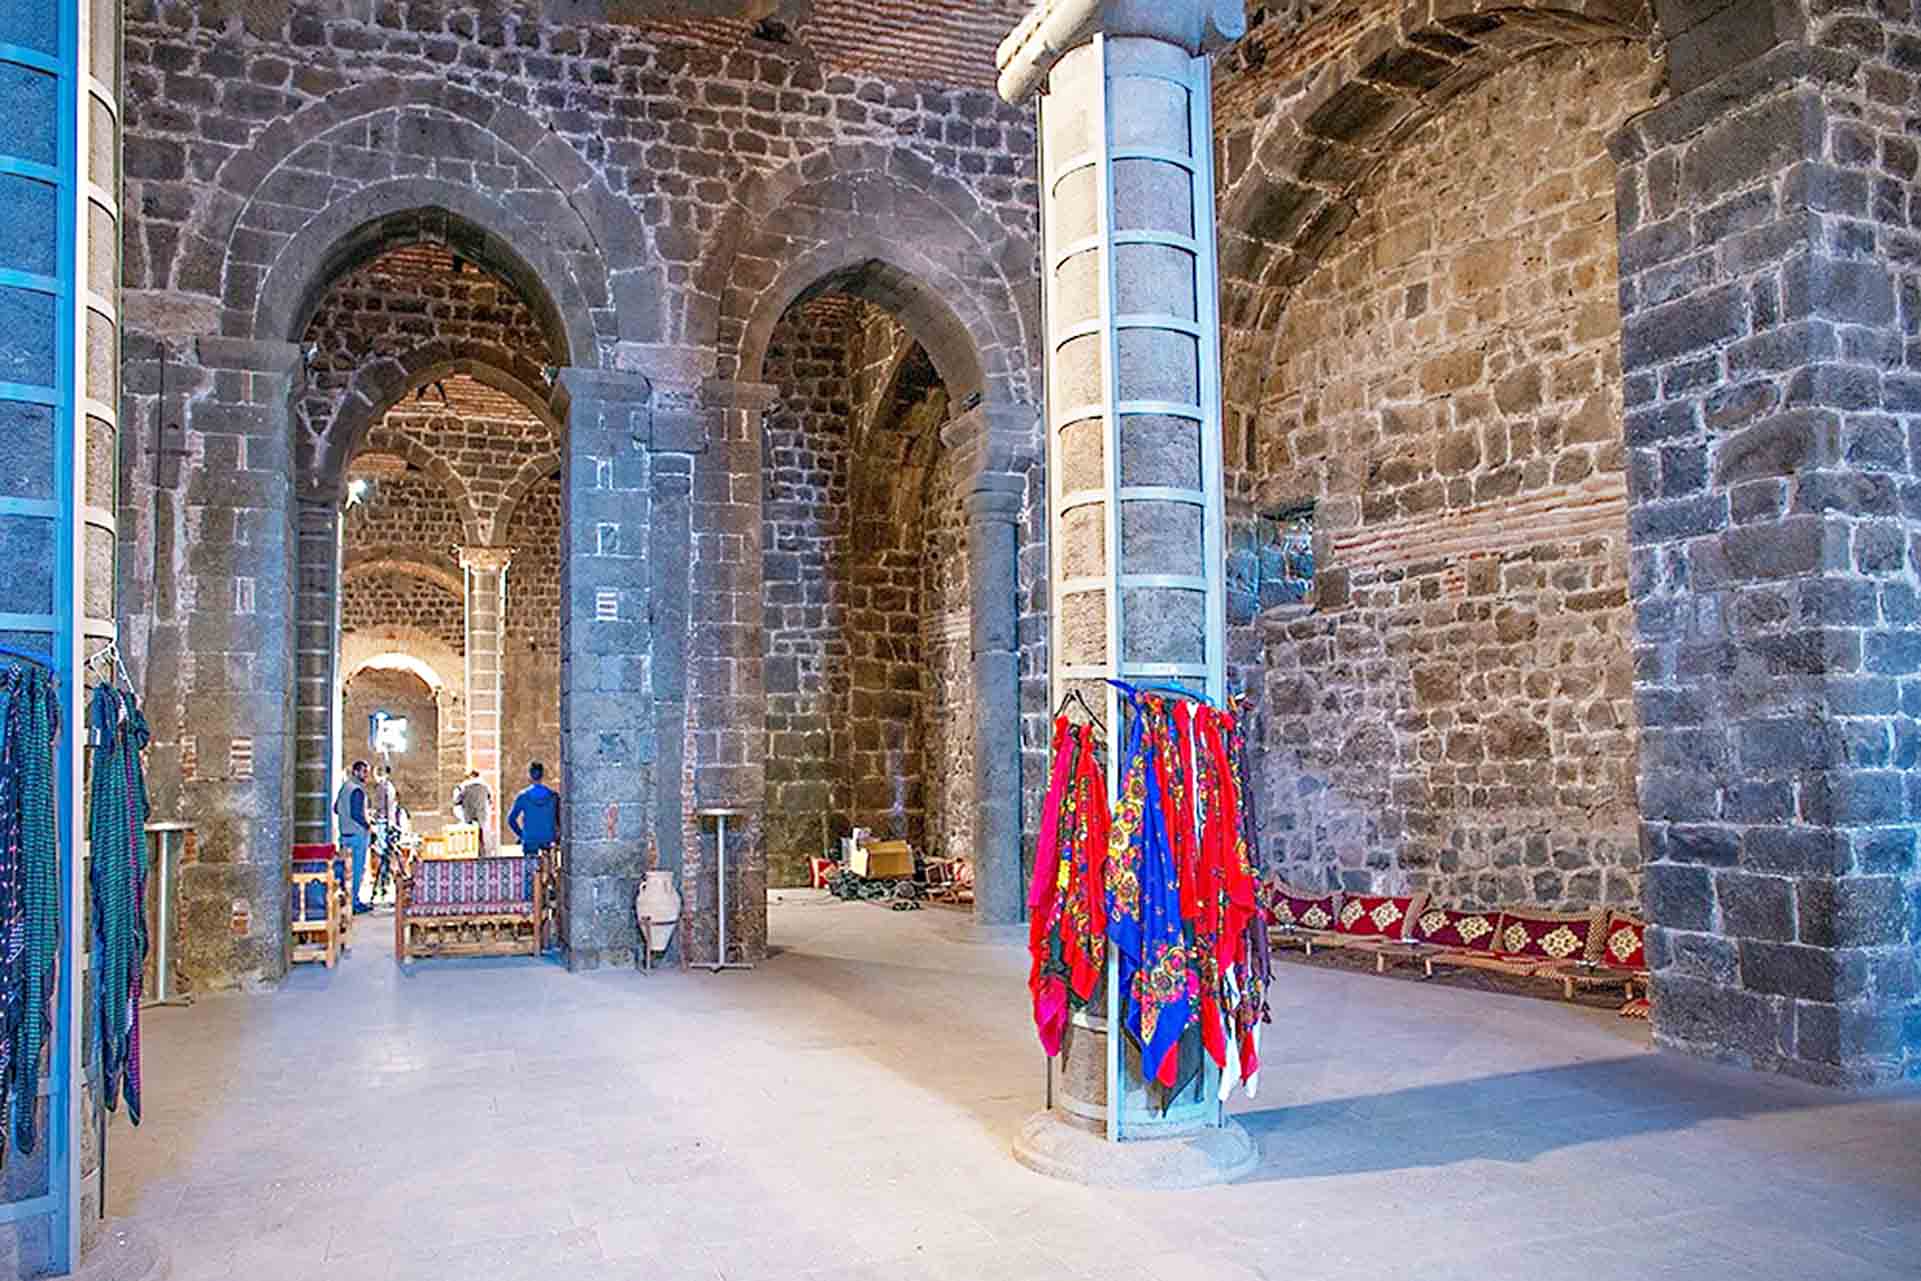 Chiêm ngưỡng vẻ kỳ vĩ của Diyarbakir - Tường thành dài thứ 2 thế giới bị ảnh hưởng bởi động đất tại Thổ Nhĩ Kỳ - Ảnh 15.